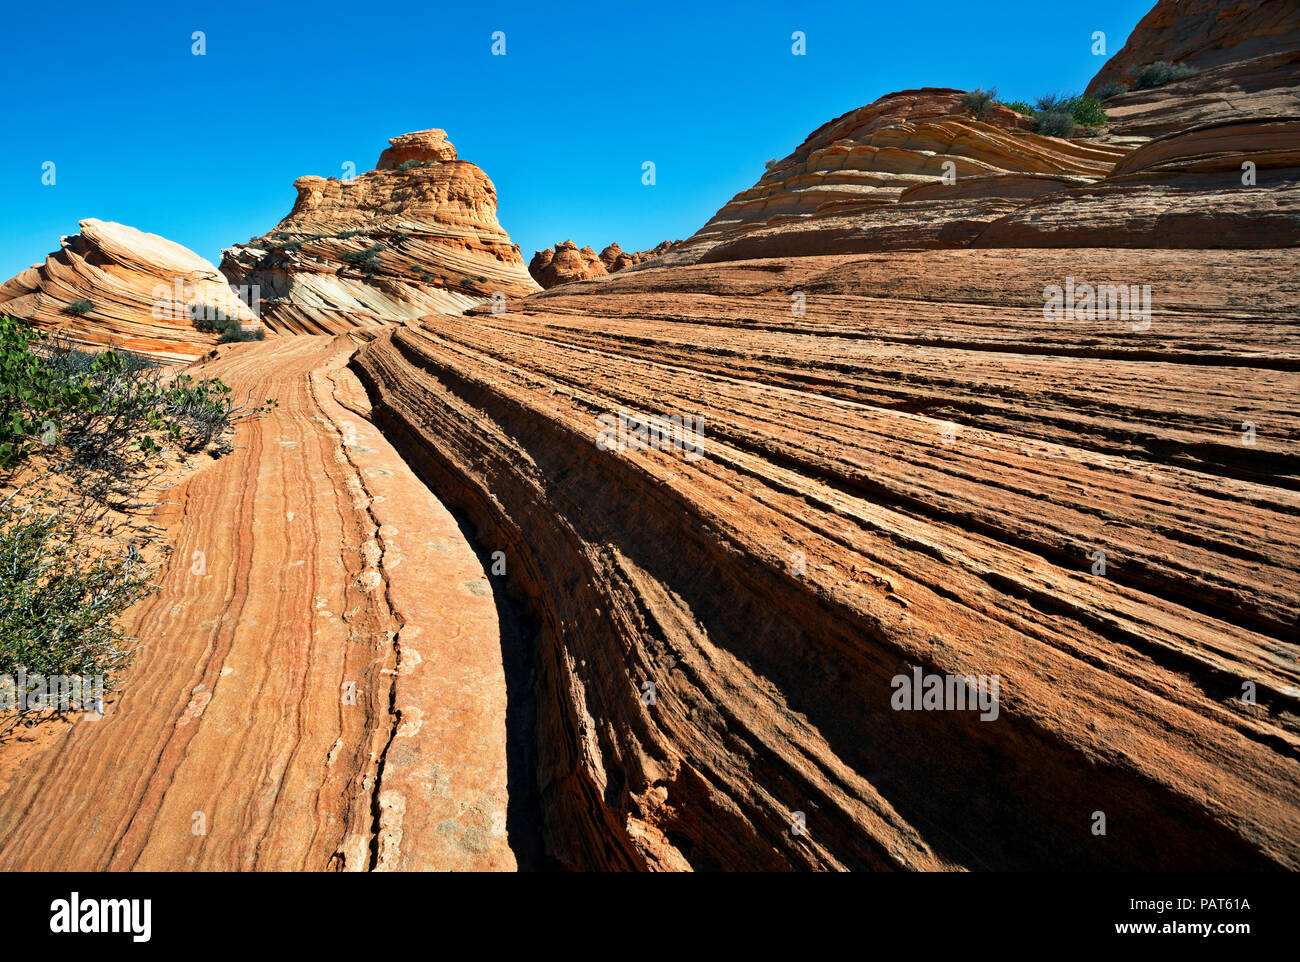 AZ 00189-00 ... ARIZONA - Die Schichten- und Sandstein Felsformationen in den Coyote Buttes, südlichen Abschnitt des Paria Canyon - Vermilion Cliffs Wilderness Area. Stockfoto